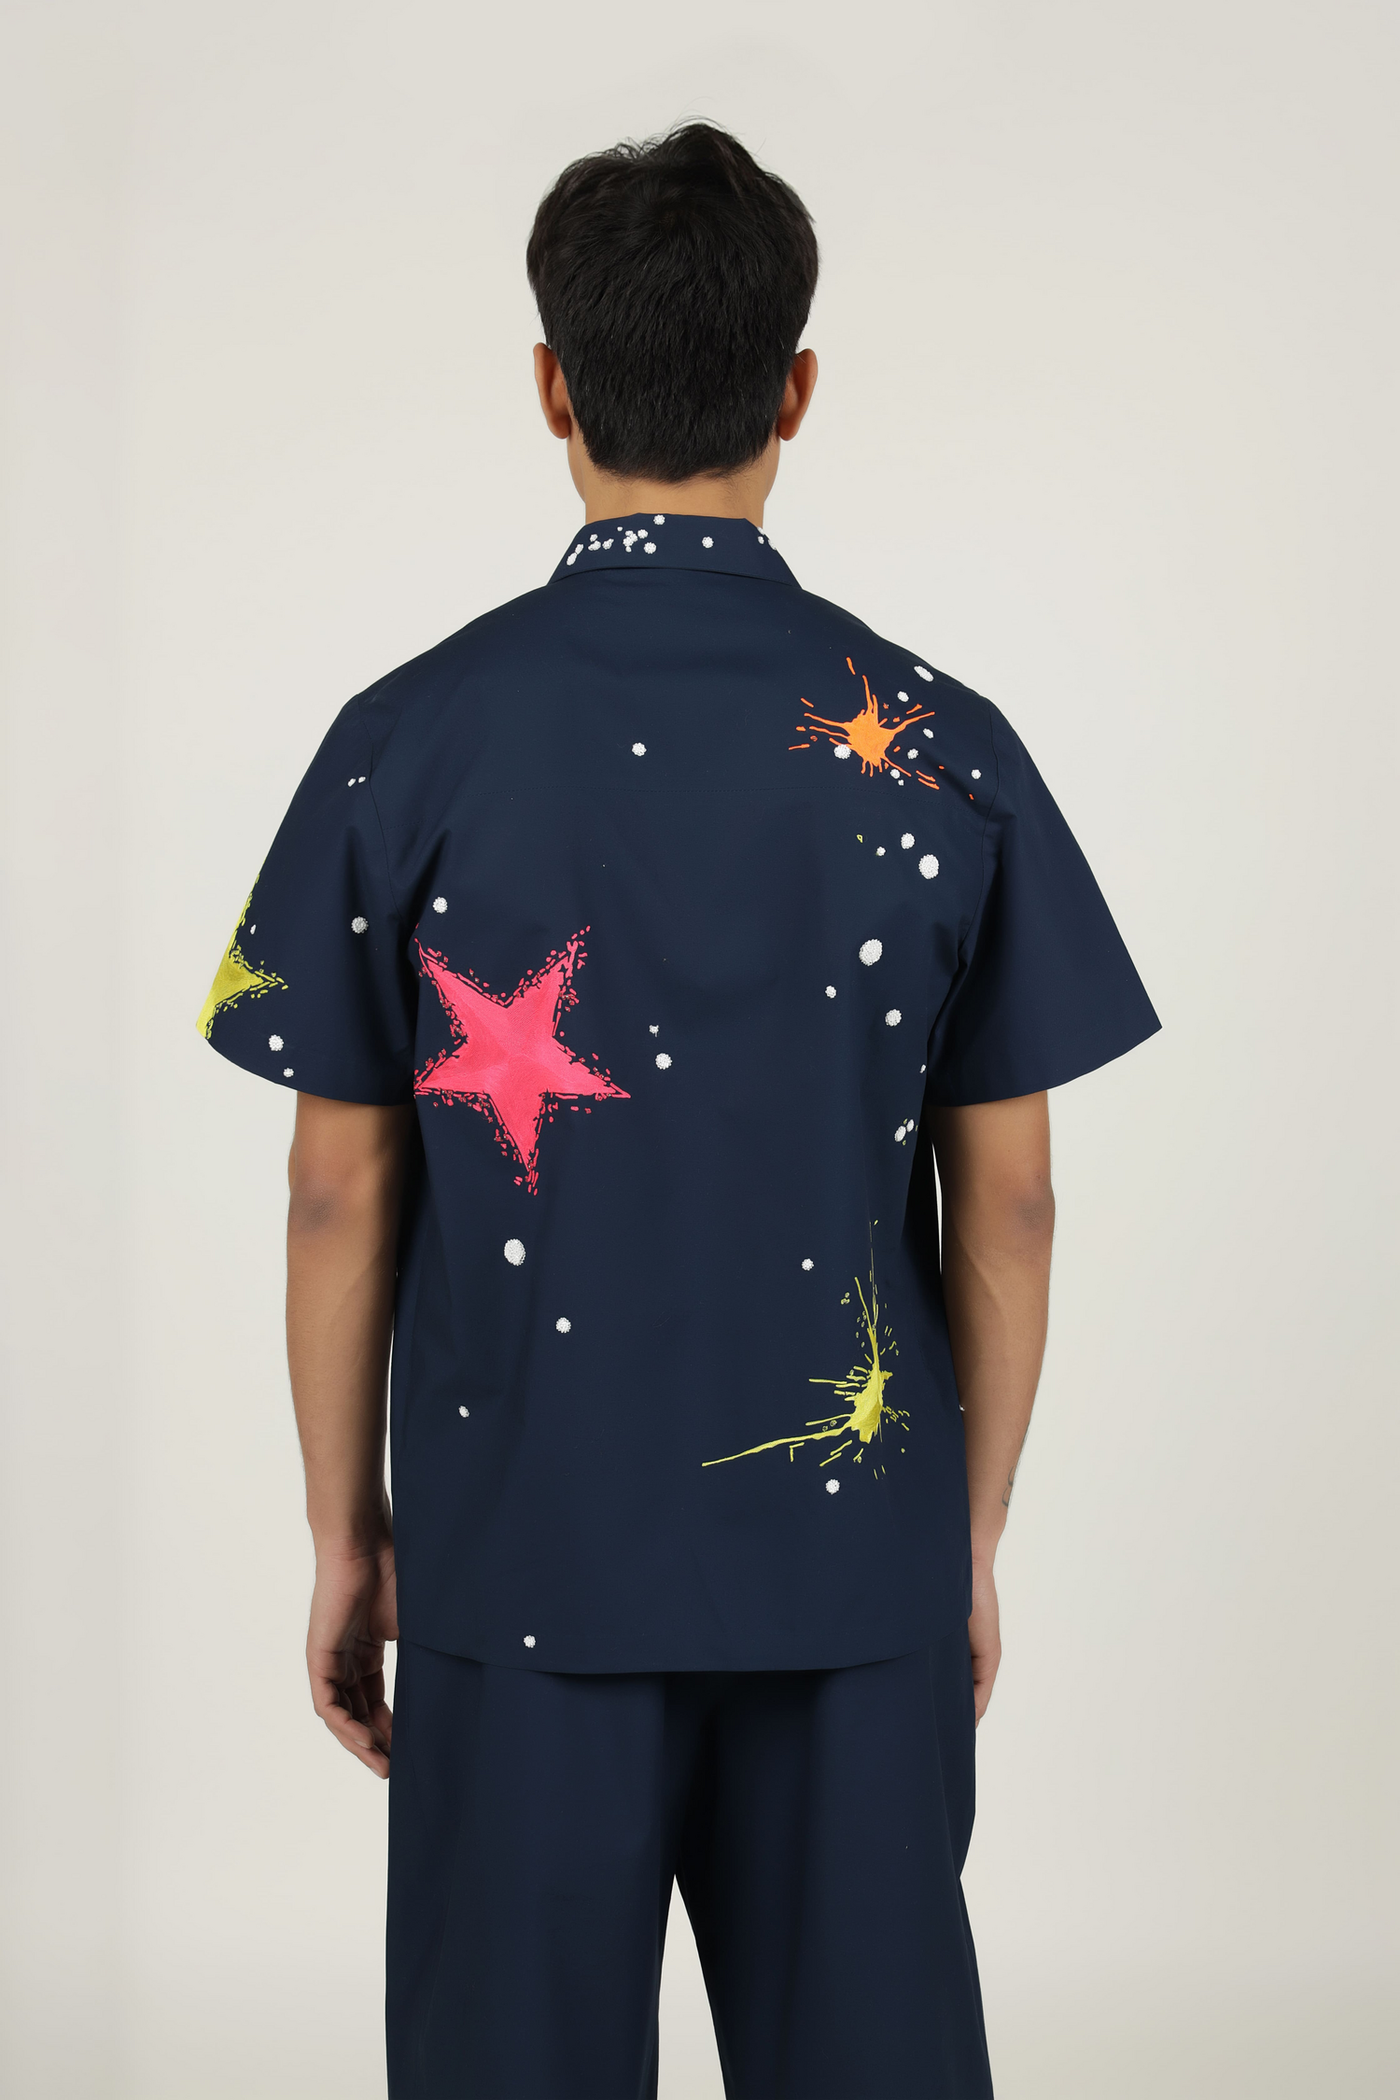 Star Splashes Shirt